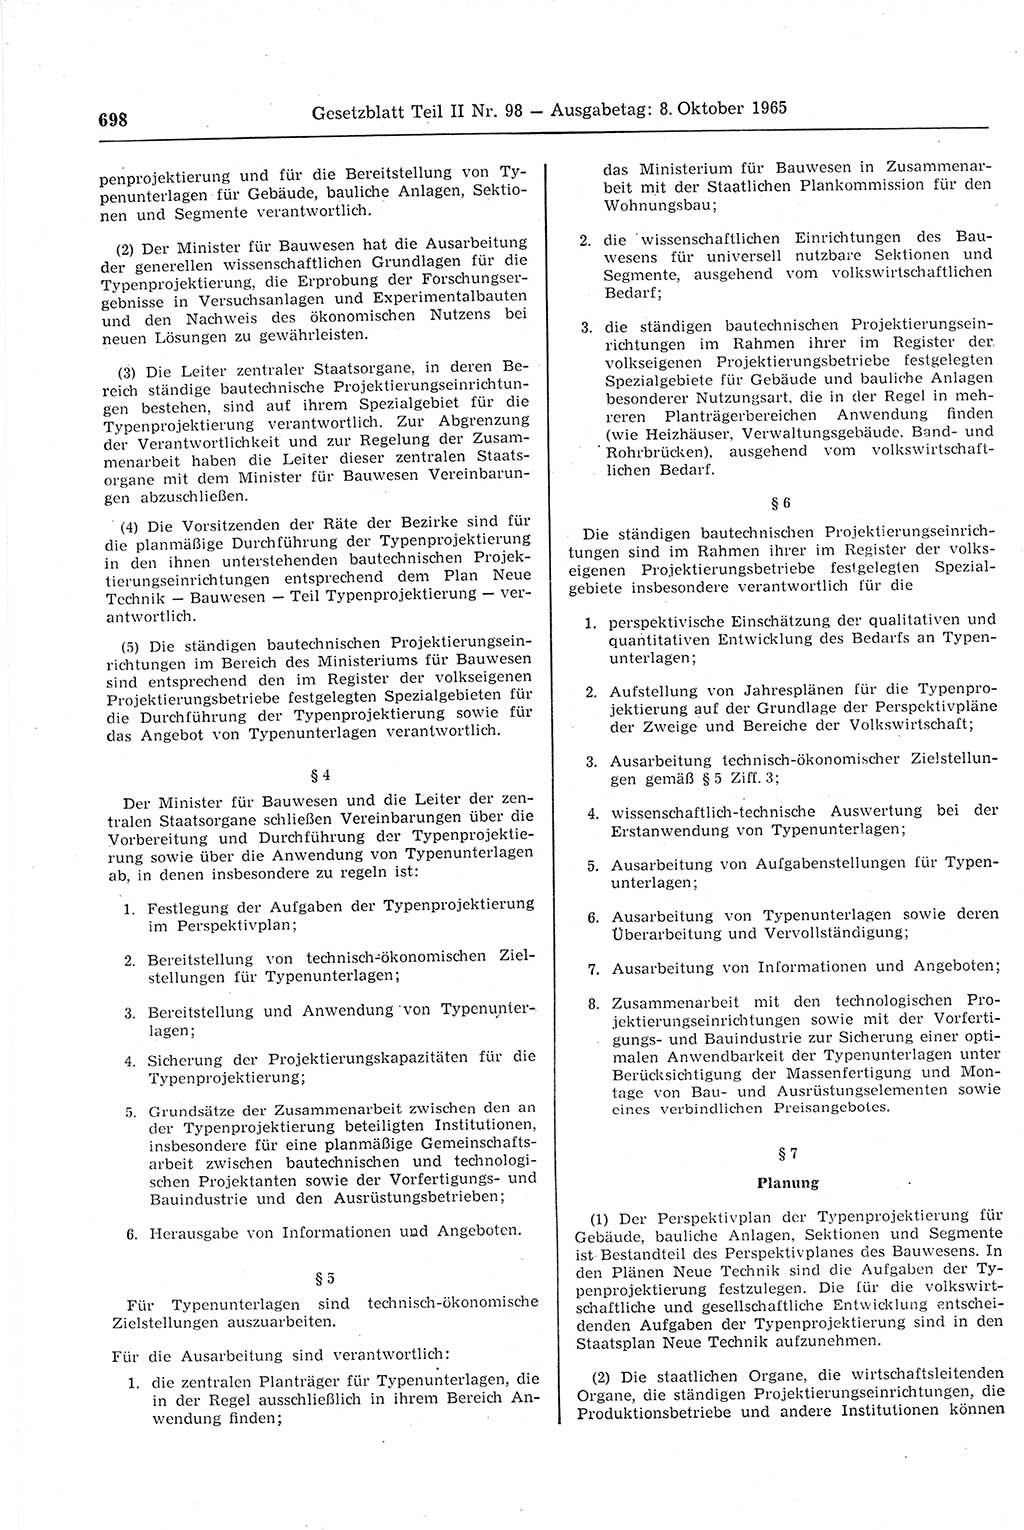 Gesetzblatt (GBl.) der Deutschen Demokratischen Republik (DDR) Teil ⅠⅠ 1965, Seite 698 (GBl. DDR ⅠⅠ 1965, S. 698)